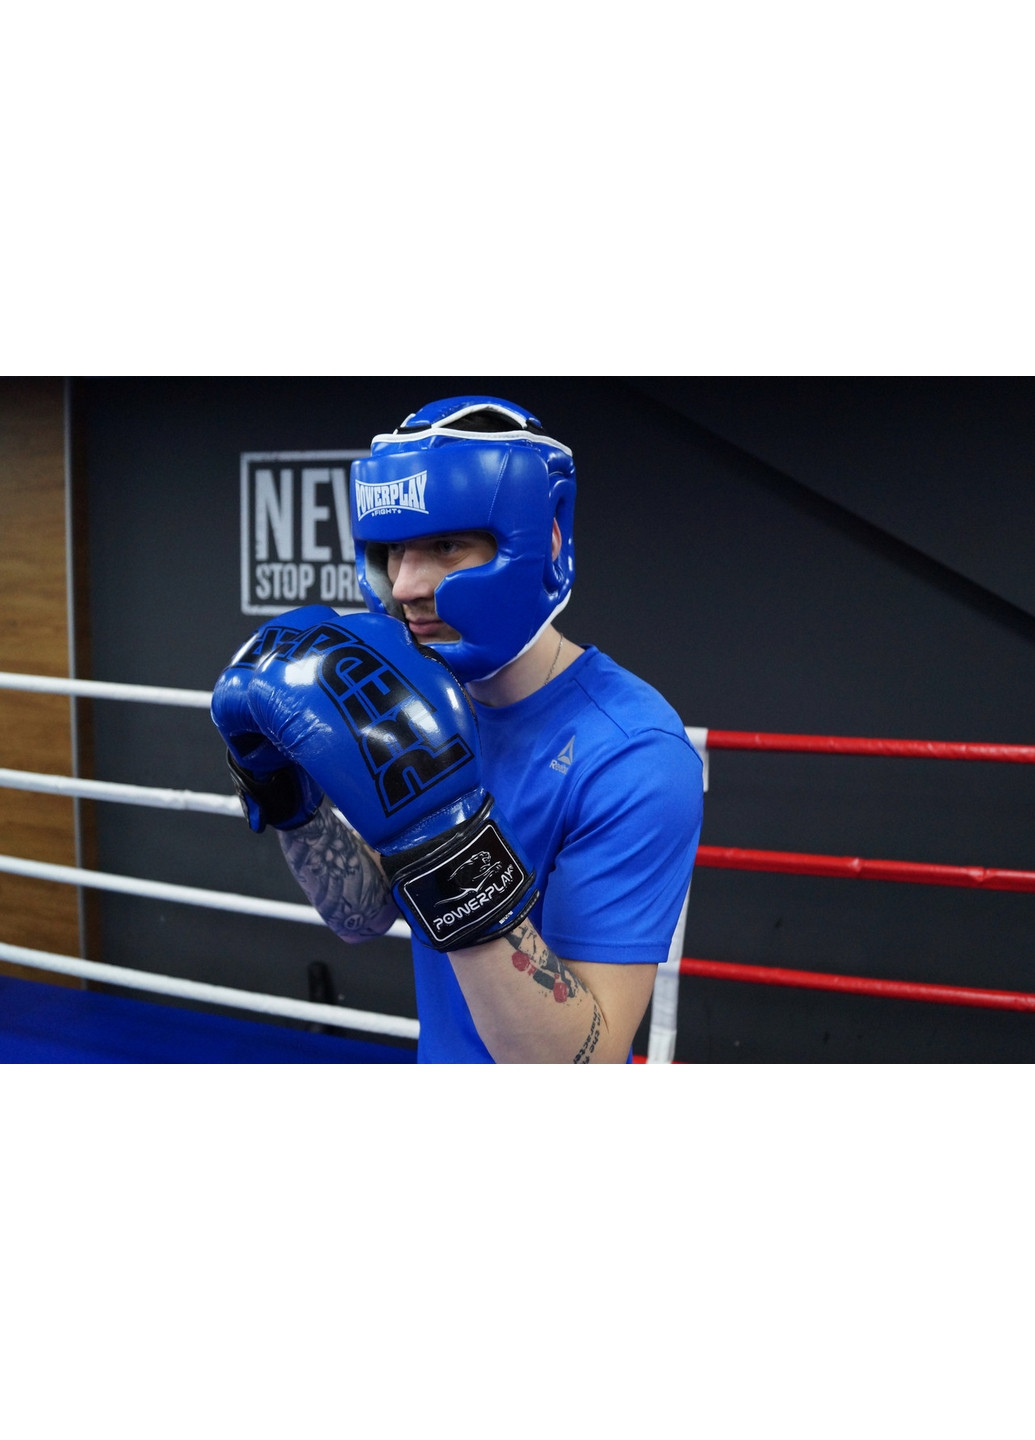 Боксерський шолом тренувальний S PowerPlay (260515075)